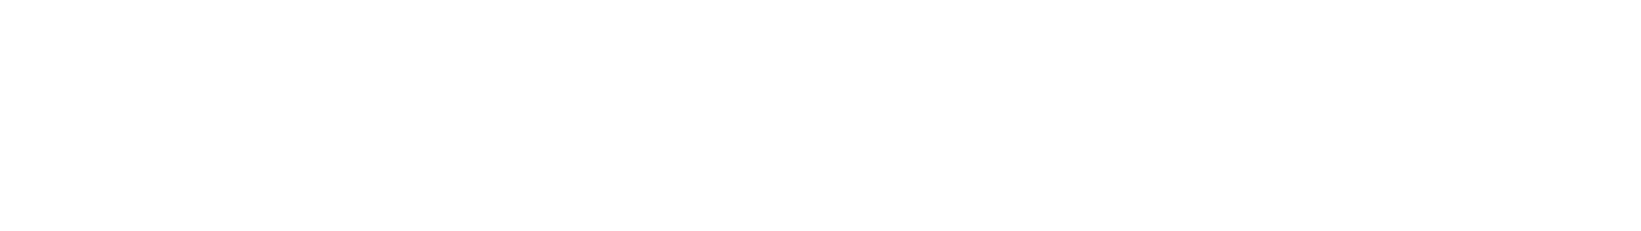 Textul IonescuLaw scris cu font alb reprezentand logo-ul site-ului ionesculaw.ro, avocati penalisti din Bucuresti